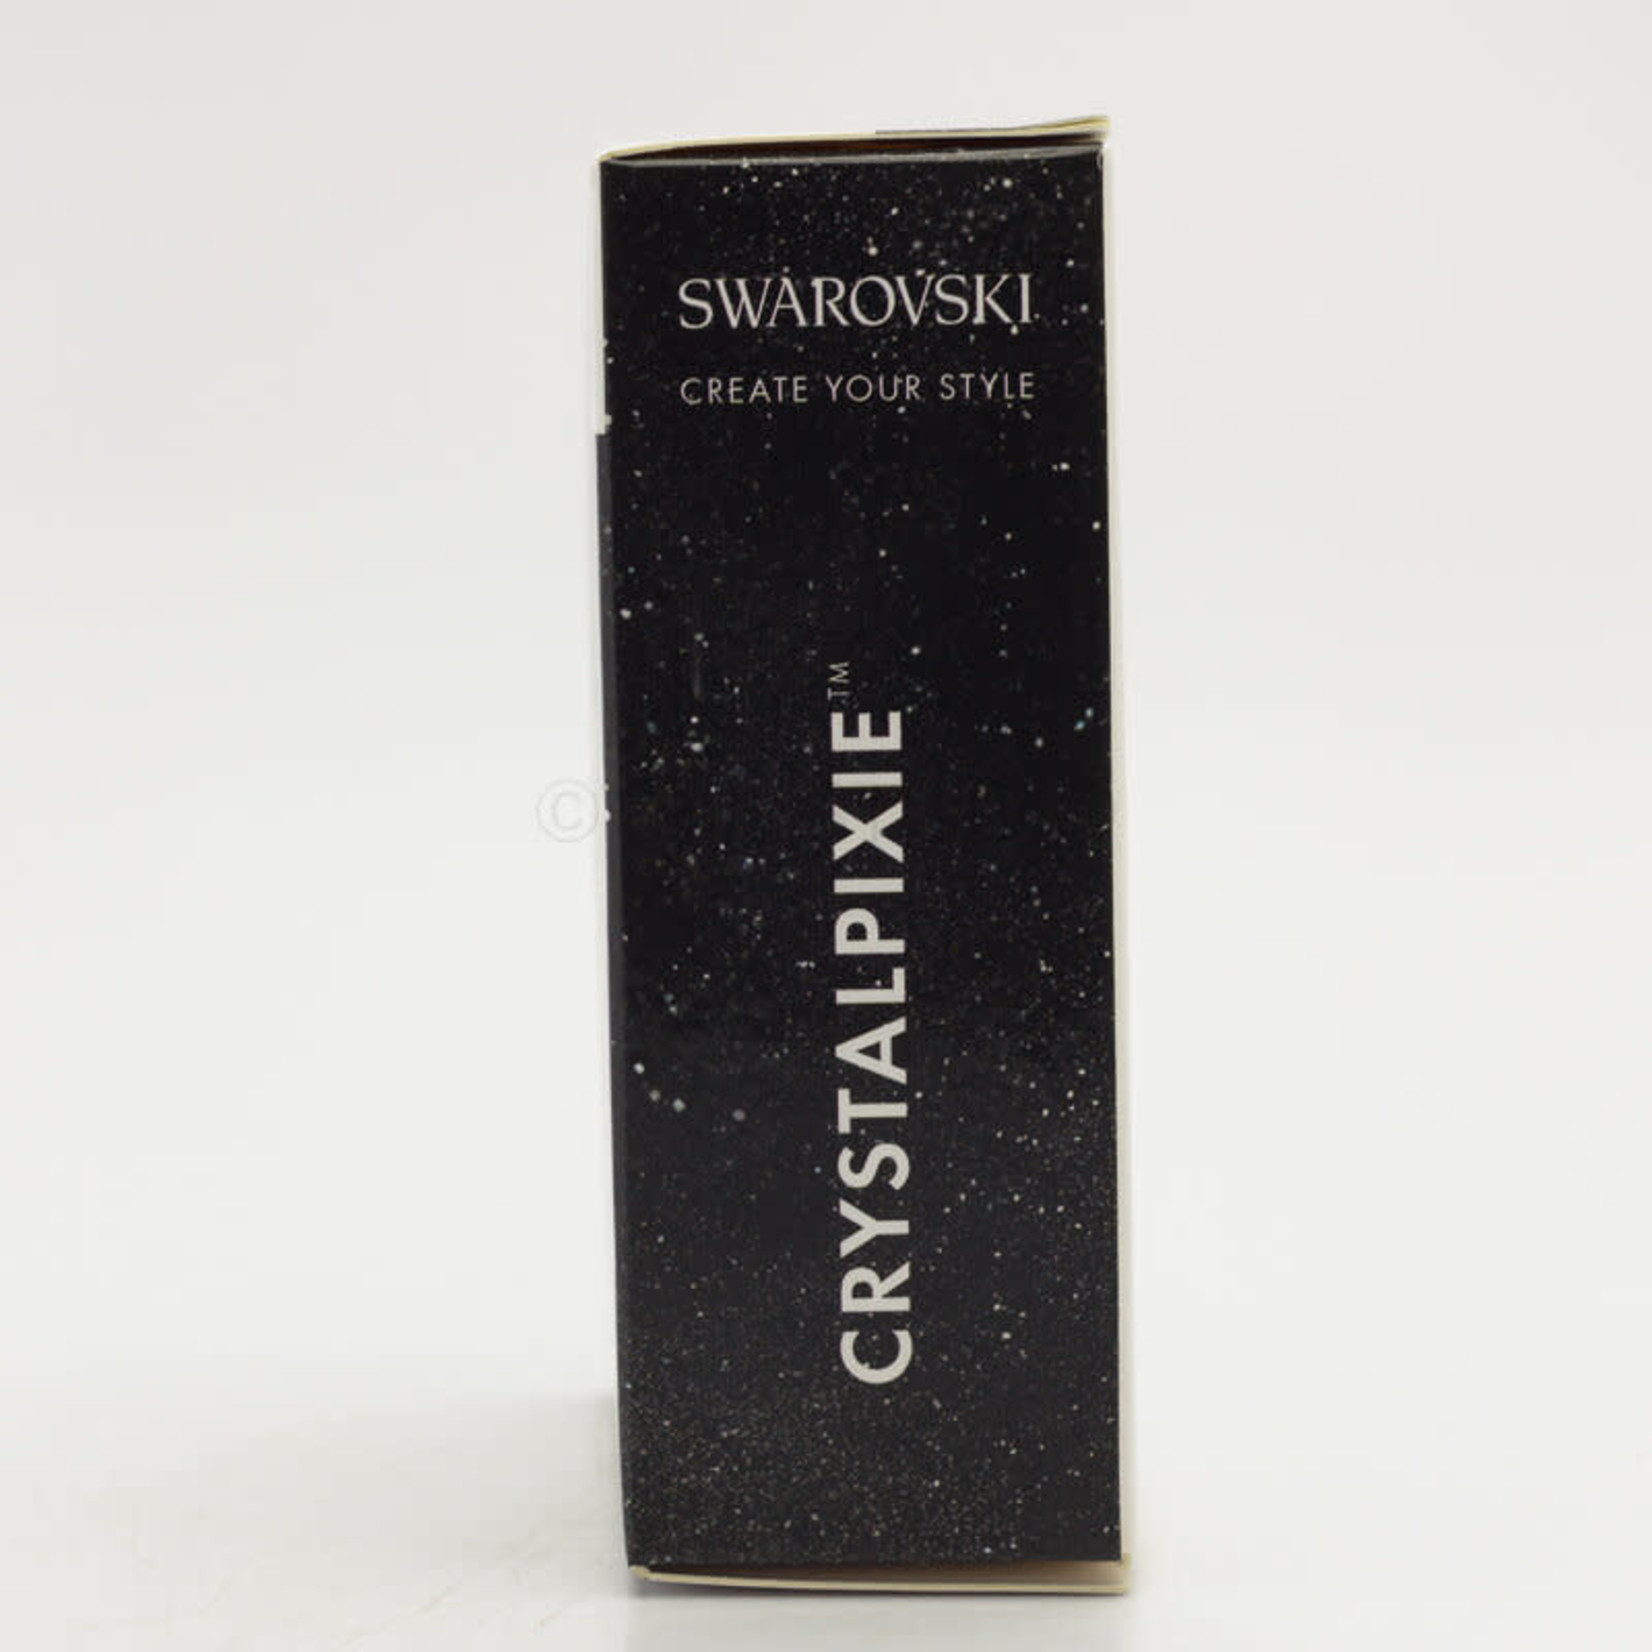 Swarovski Swarovski - Crystalpixie - Petite - Classy Sassy - 5g